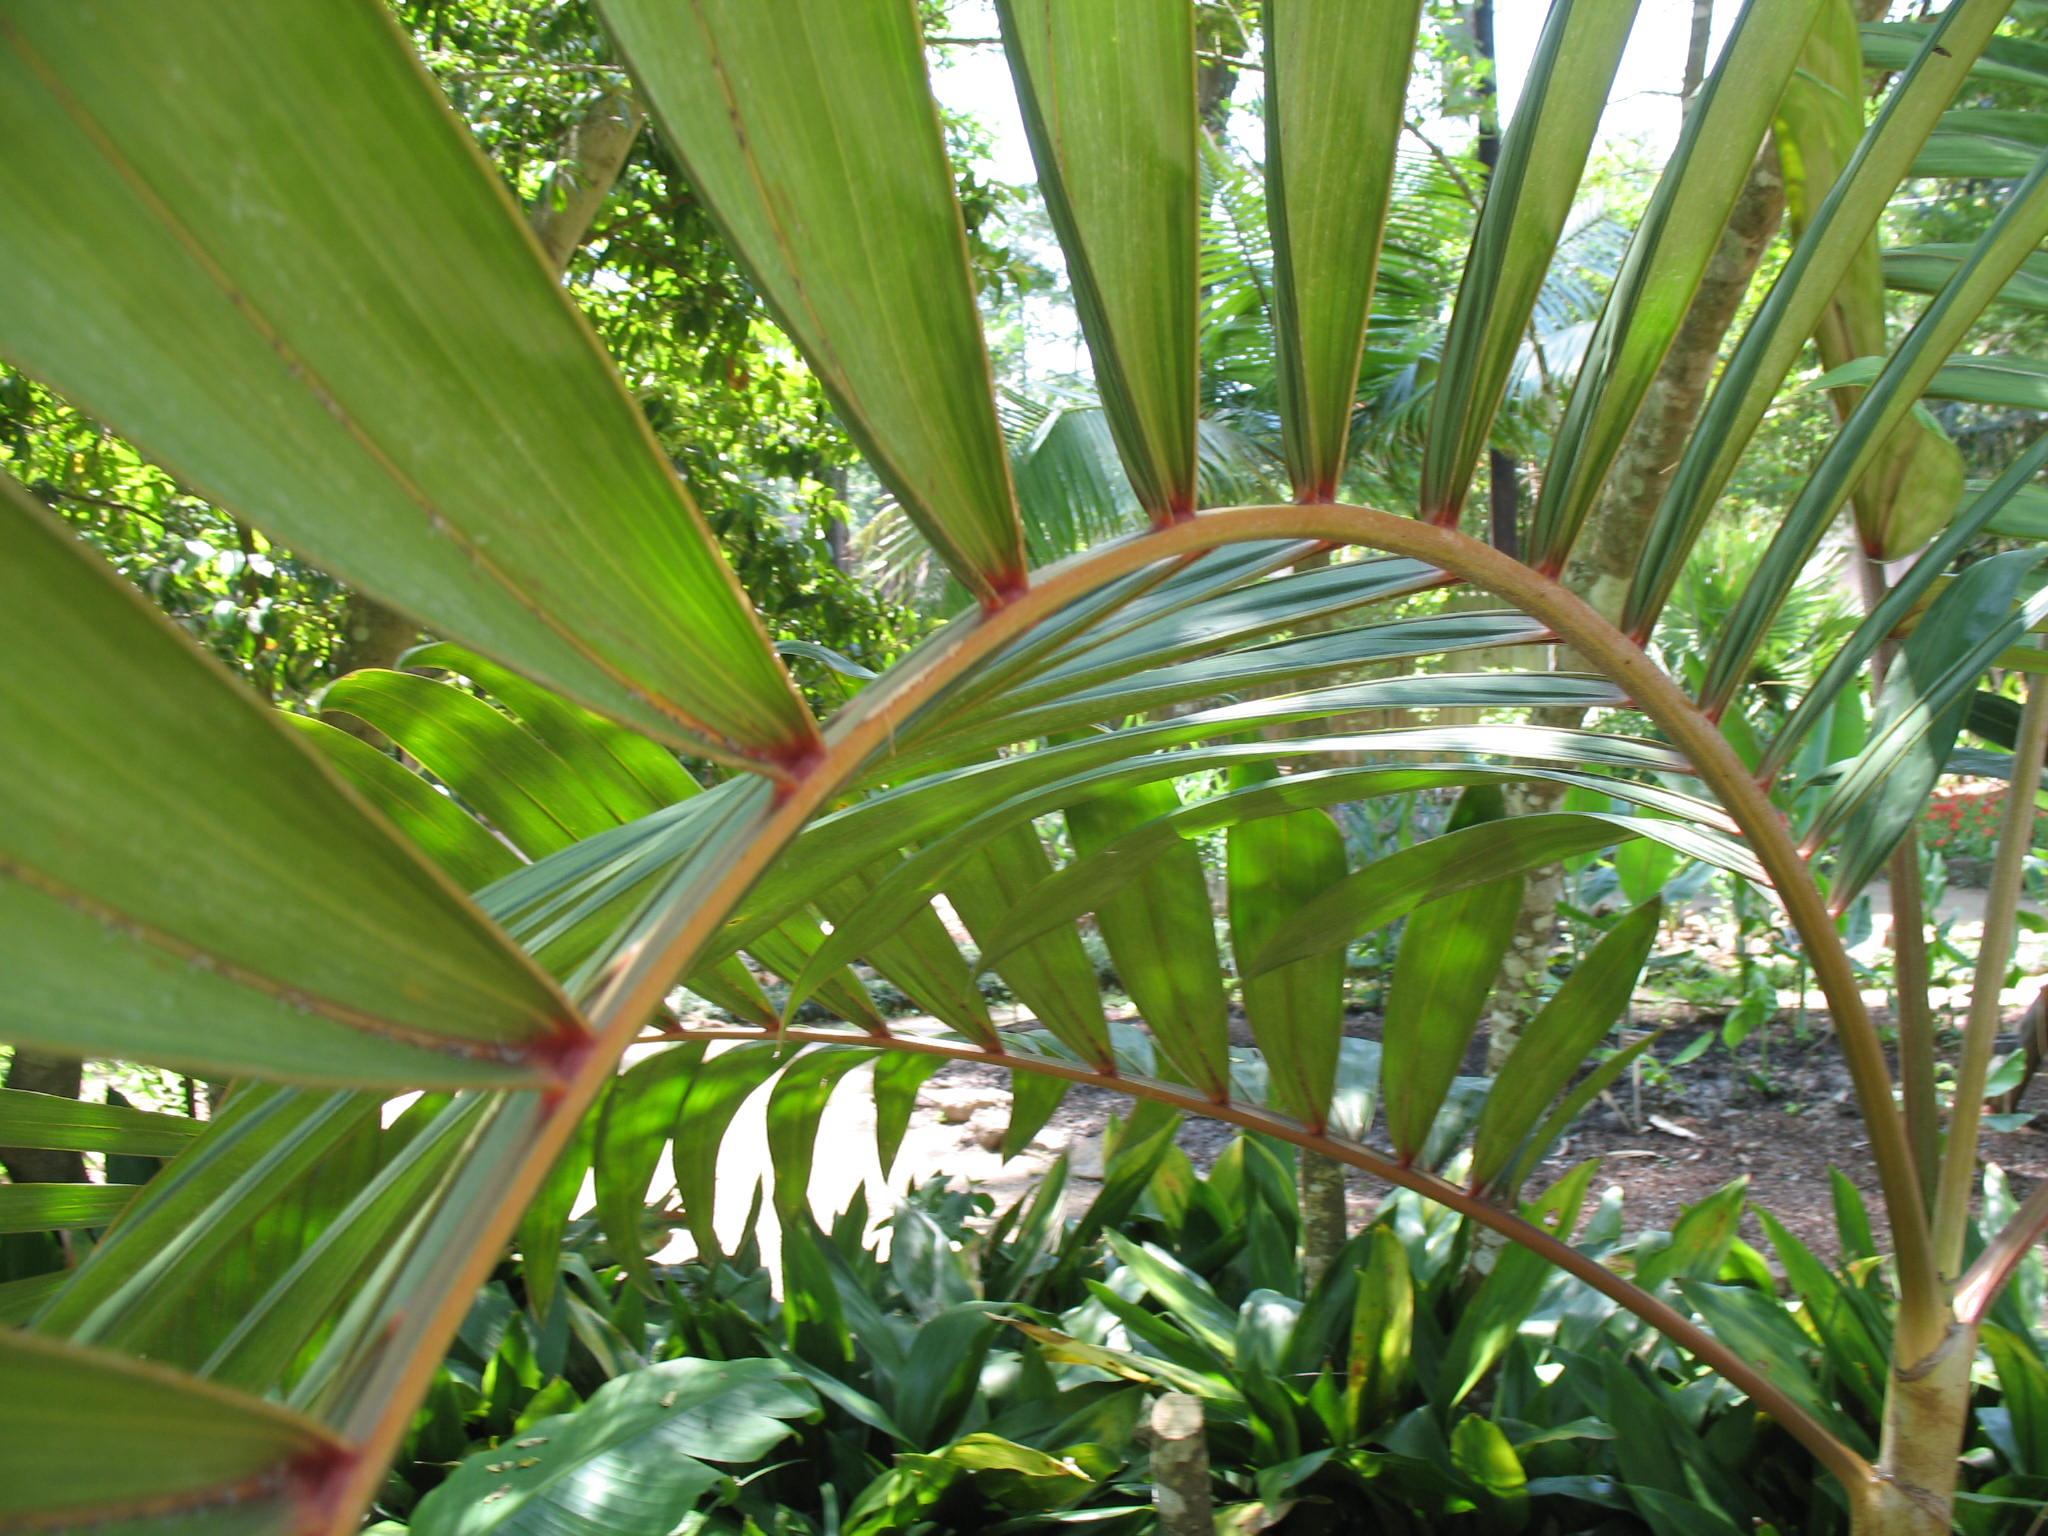 Chambeyronia macrocarpa / Red feather Palm, Blushing Palm